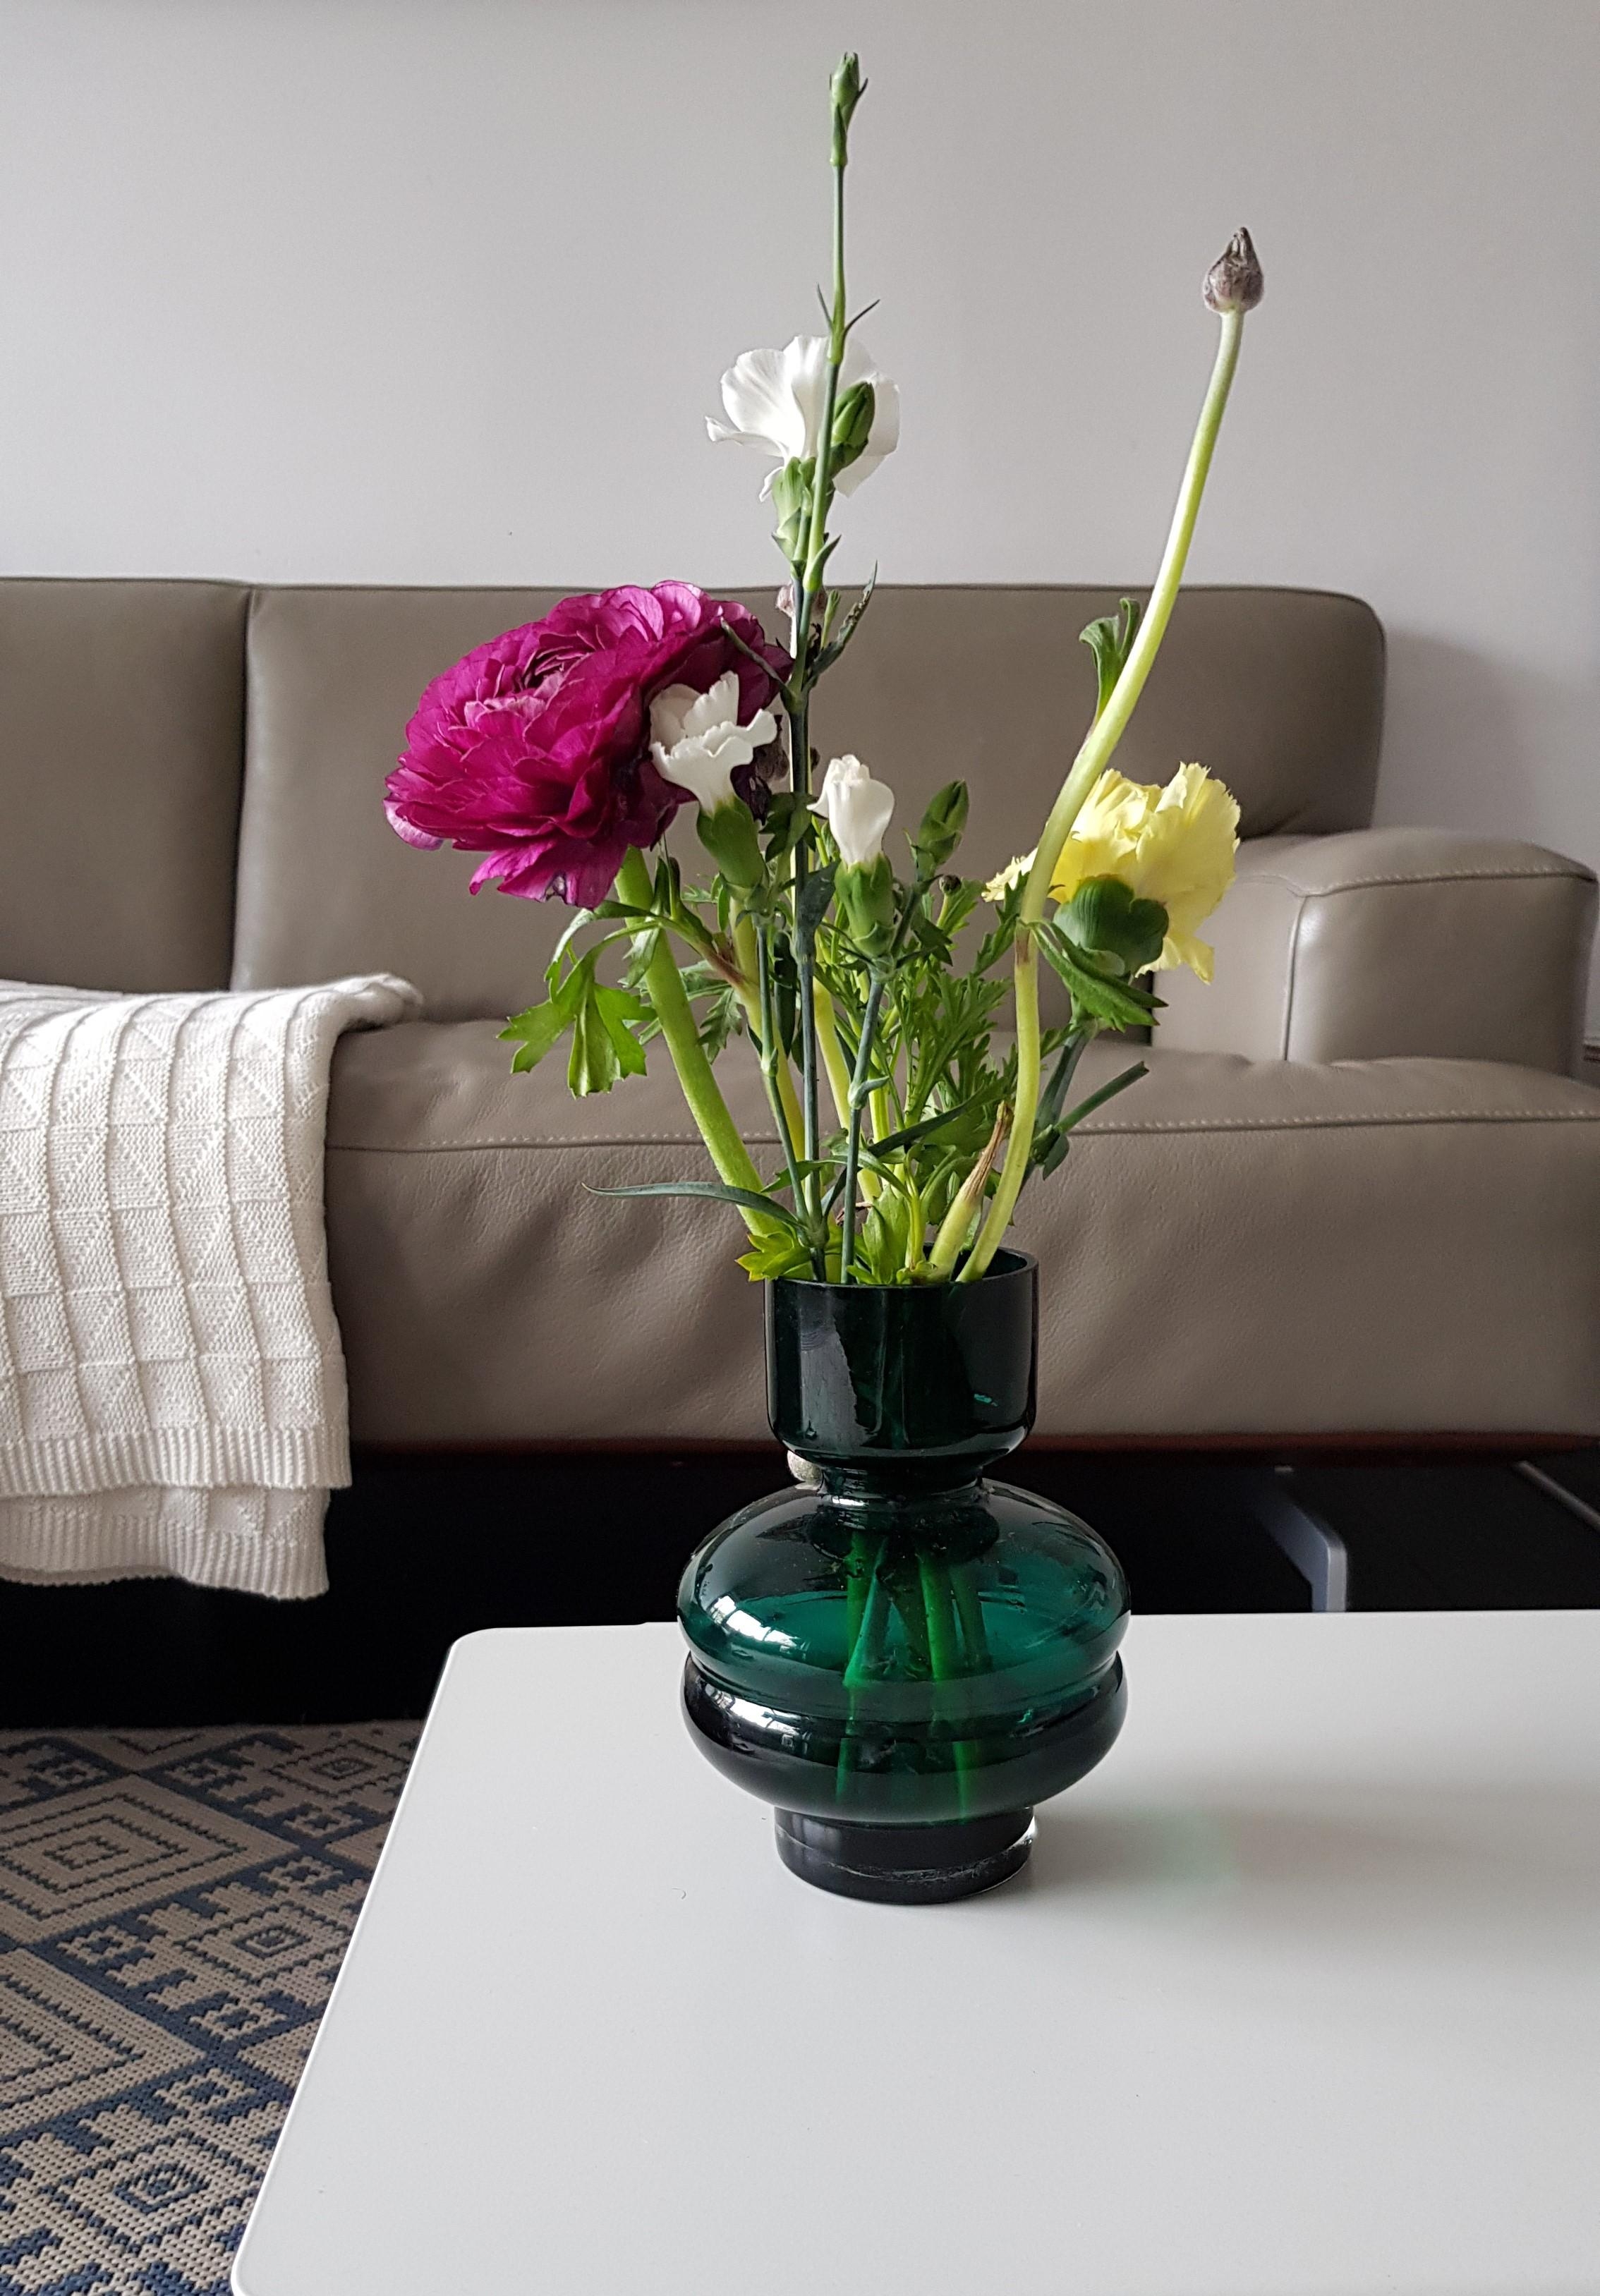 Mit frischen Blumen startet man viel schöner in die Woche, oder? #blumen #vase #deko